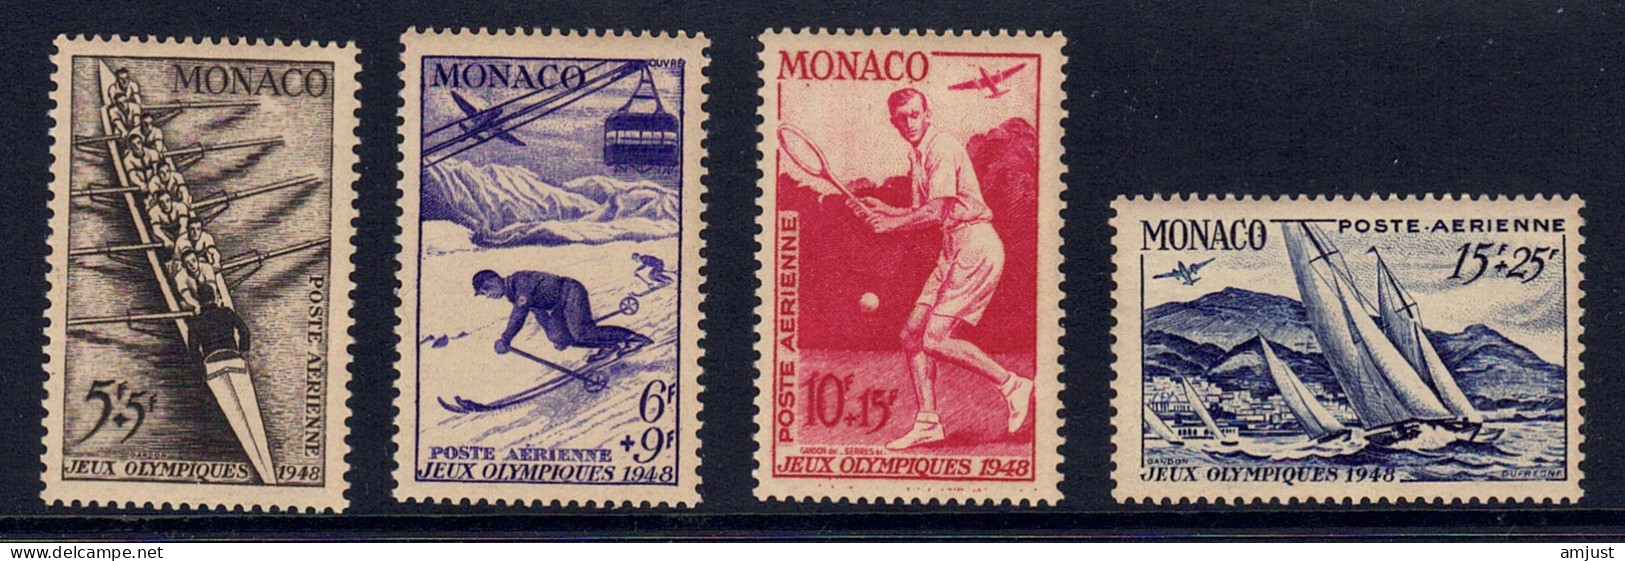 Monaco // Poste Aérienne1948  // Jeux Olympiques De Londres  Timbres Neufs** MNH  No. Y&T 32 à 35 - Aéreo